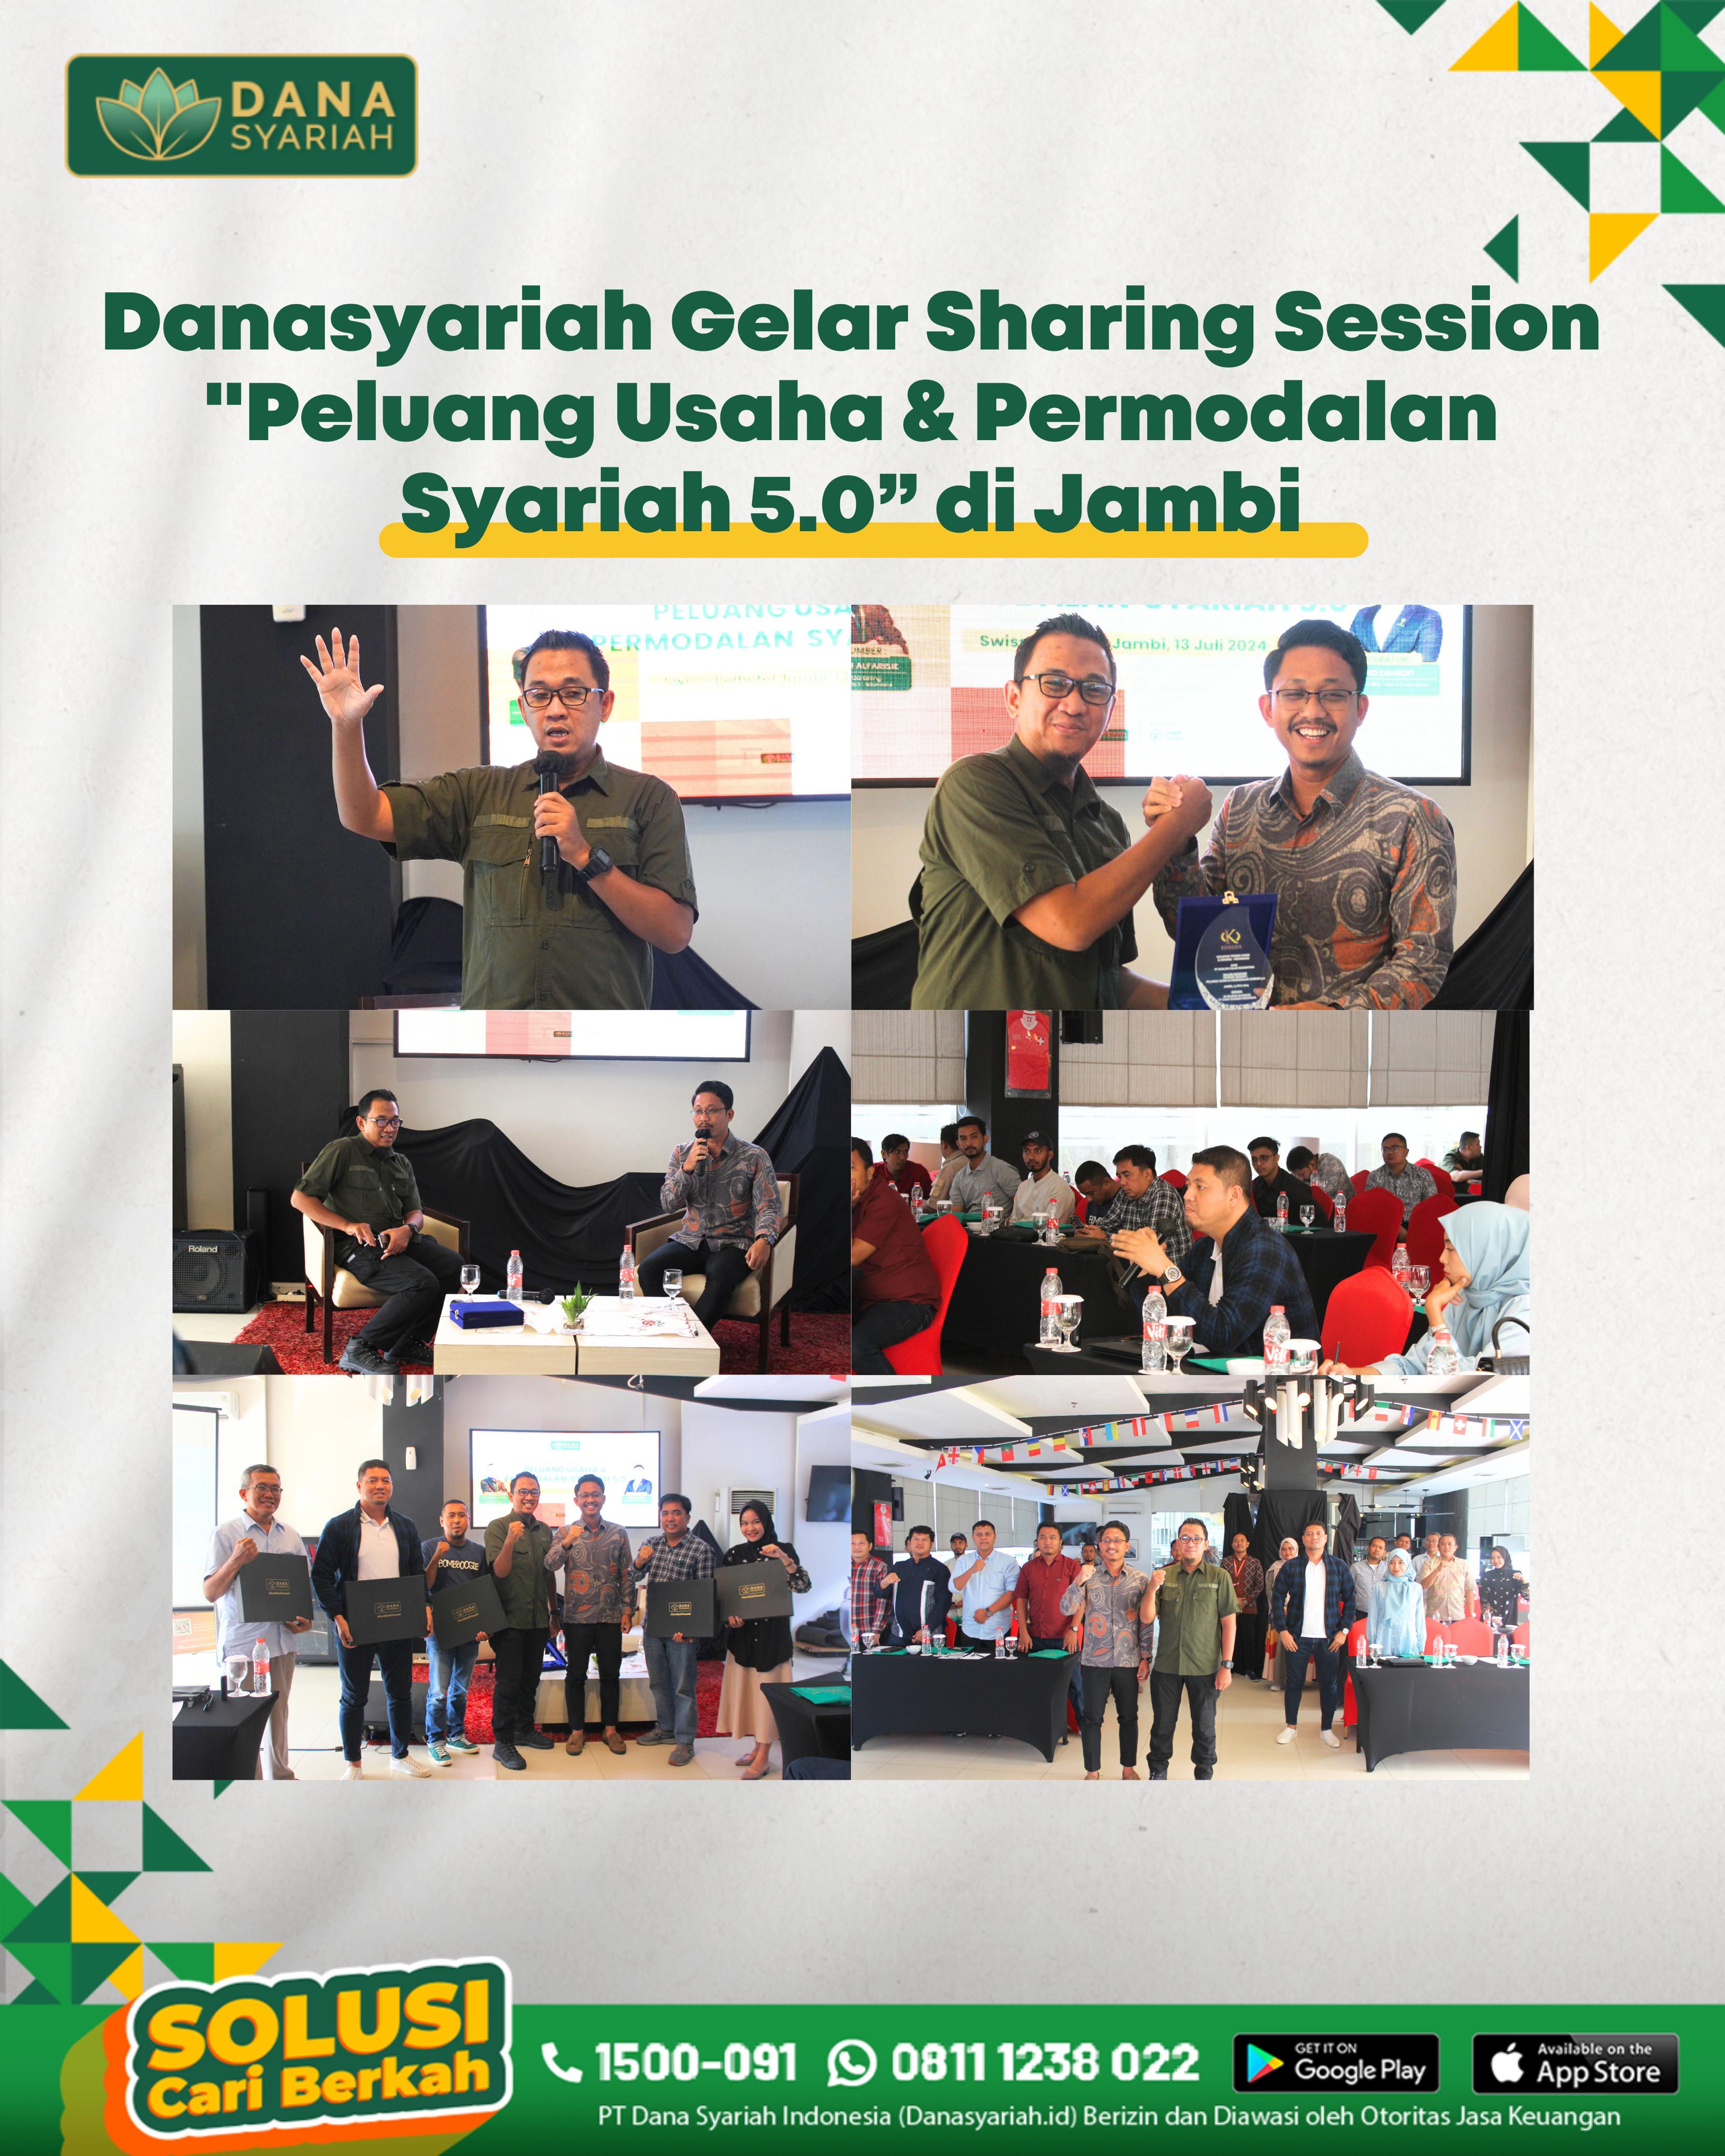 Dana Syariah Danasyariah Gelar Sharing Session "Peluang Usaha & Permodalan Syariah 5.0" di Jambi